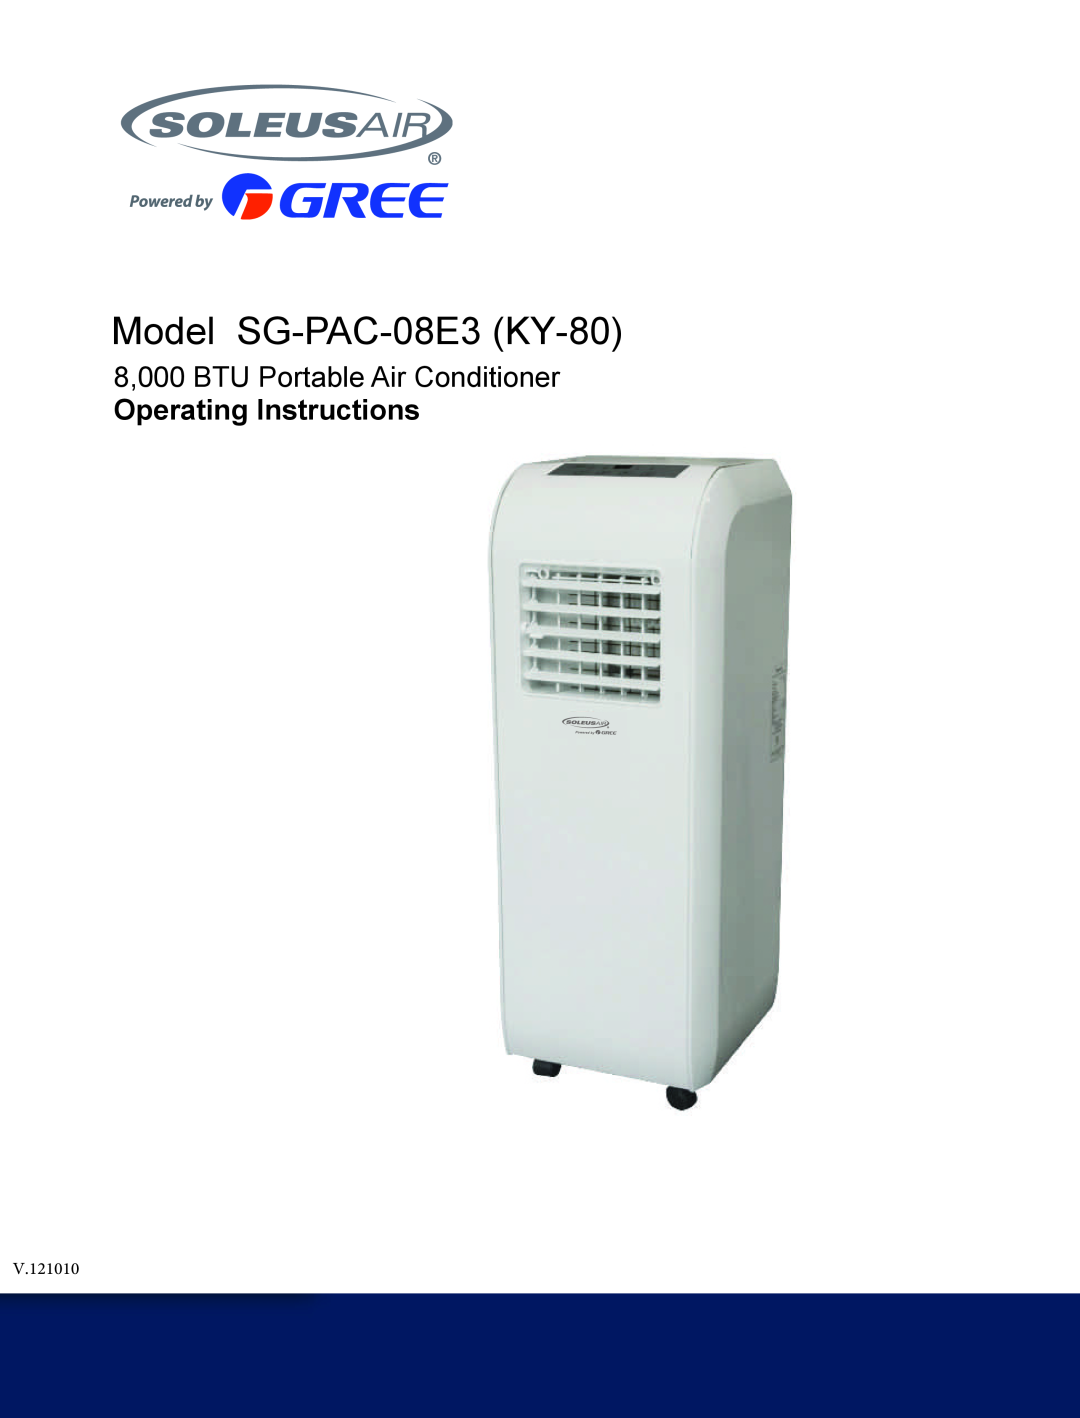 Soleus Air SG-PAC-08E3 (KY-80) manual Model SG-PAC-08E3 KY-80, 8,000 BTU Portable Air Conditioner, Operating Instructions 